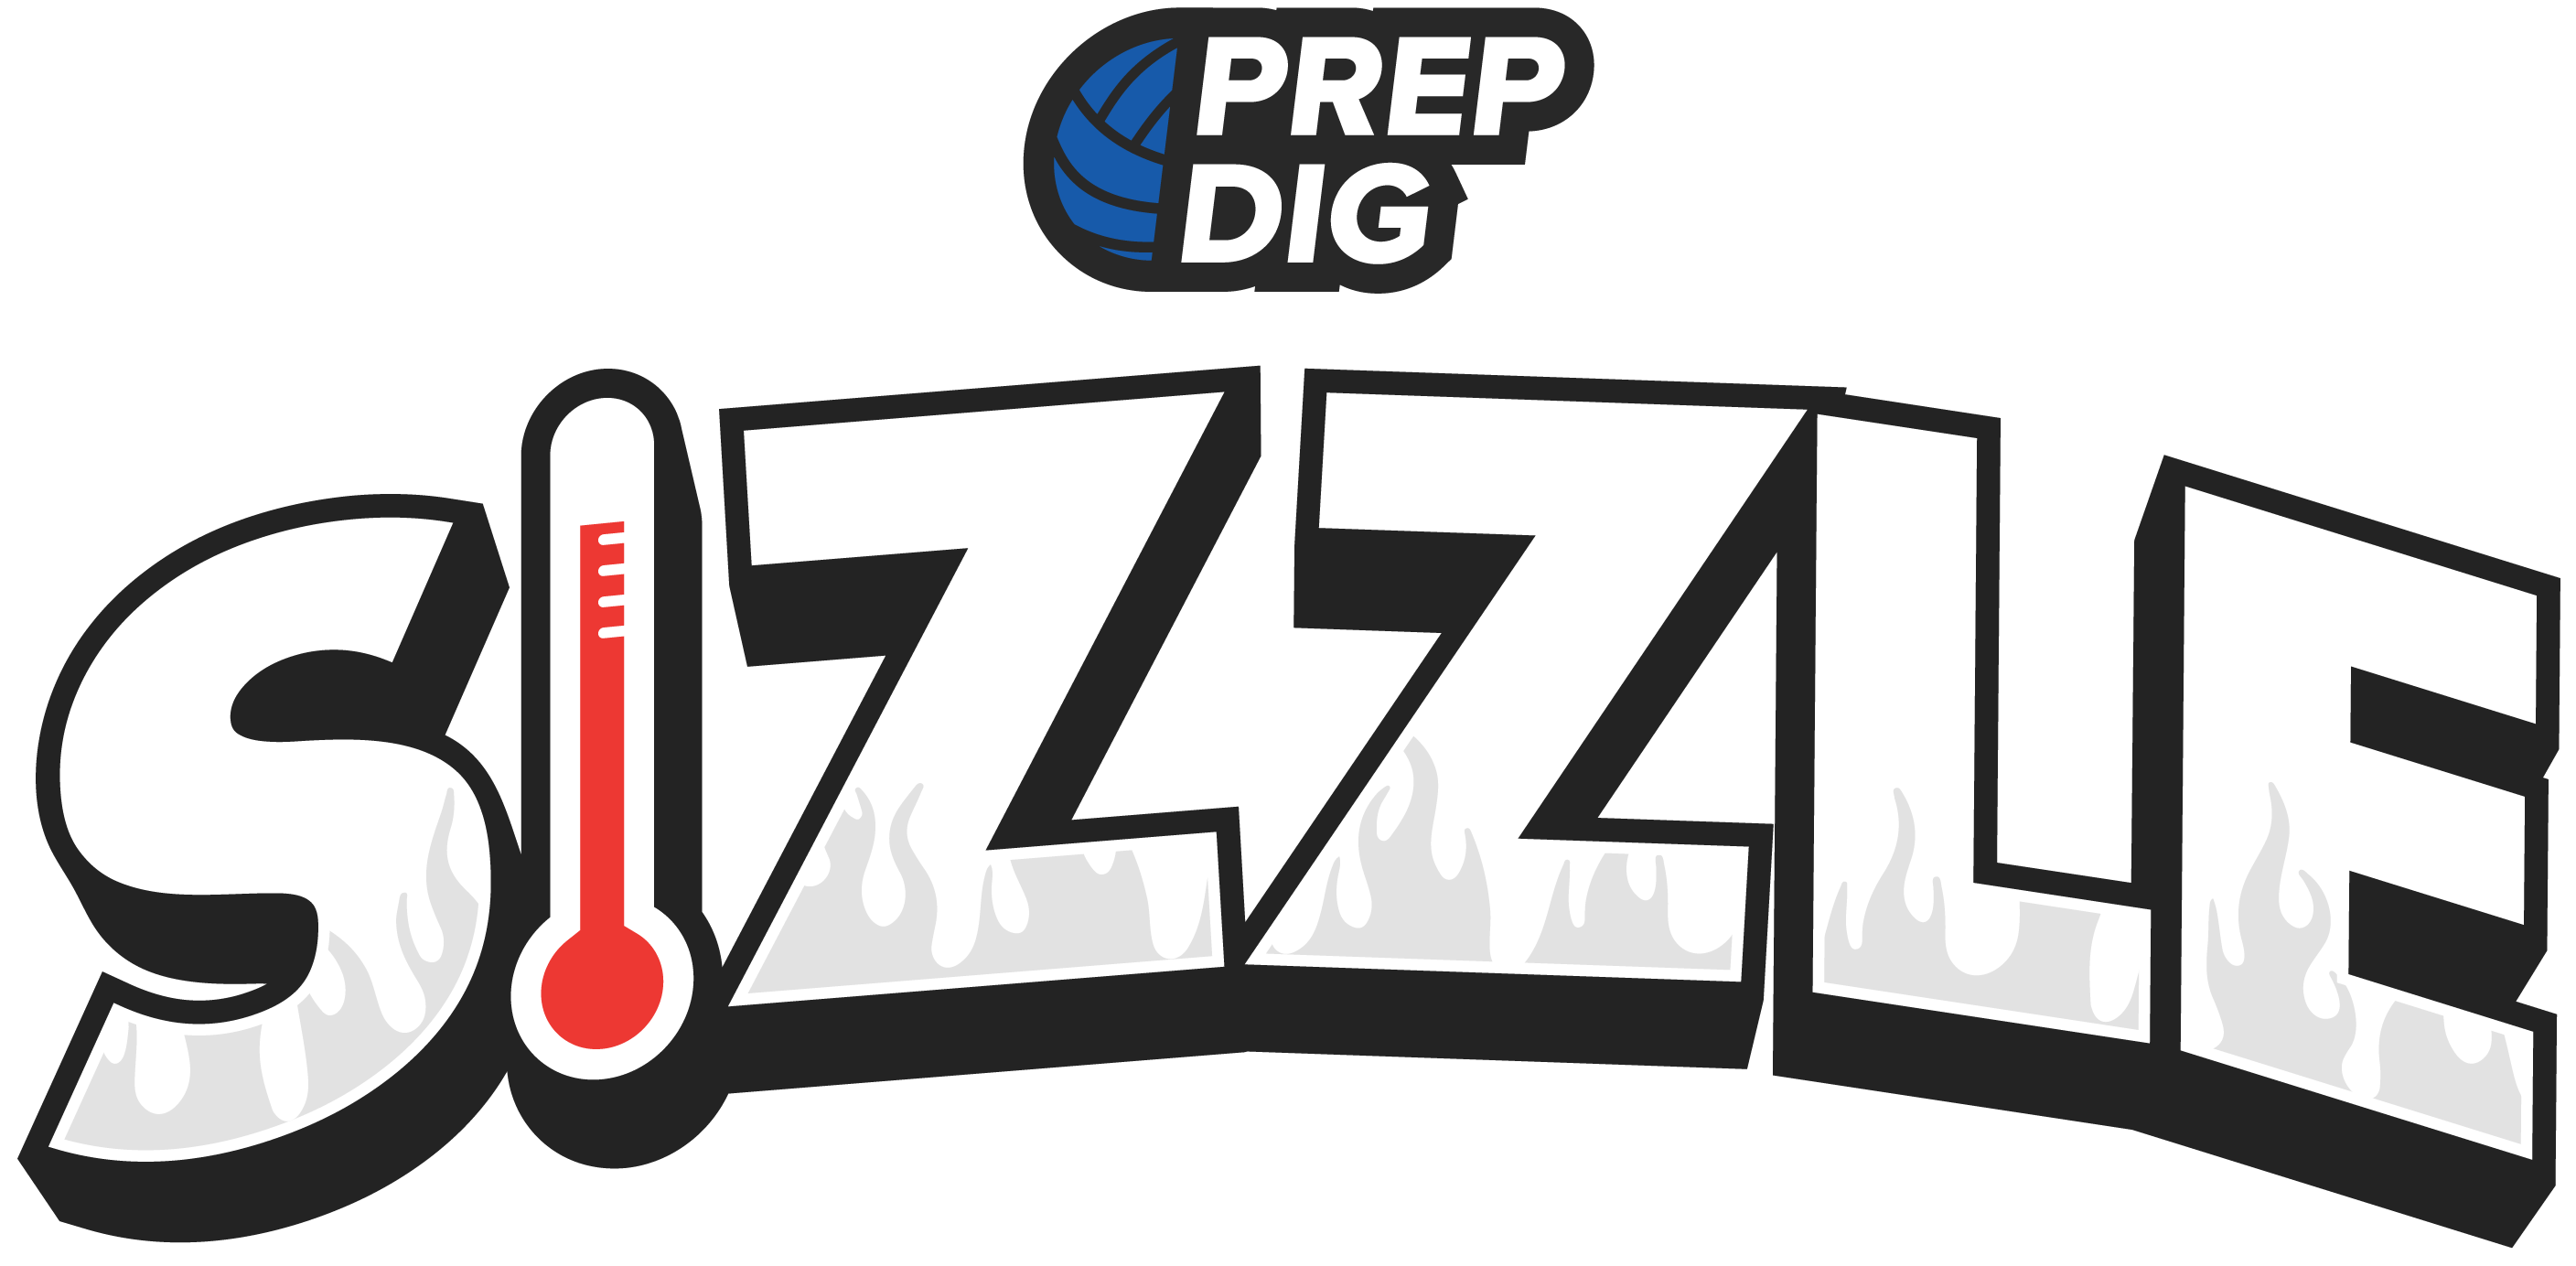 Prep Dig Sizzle (Varsity)